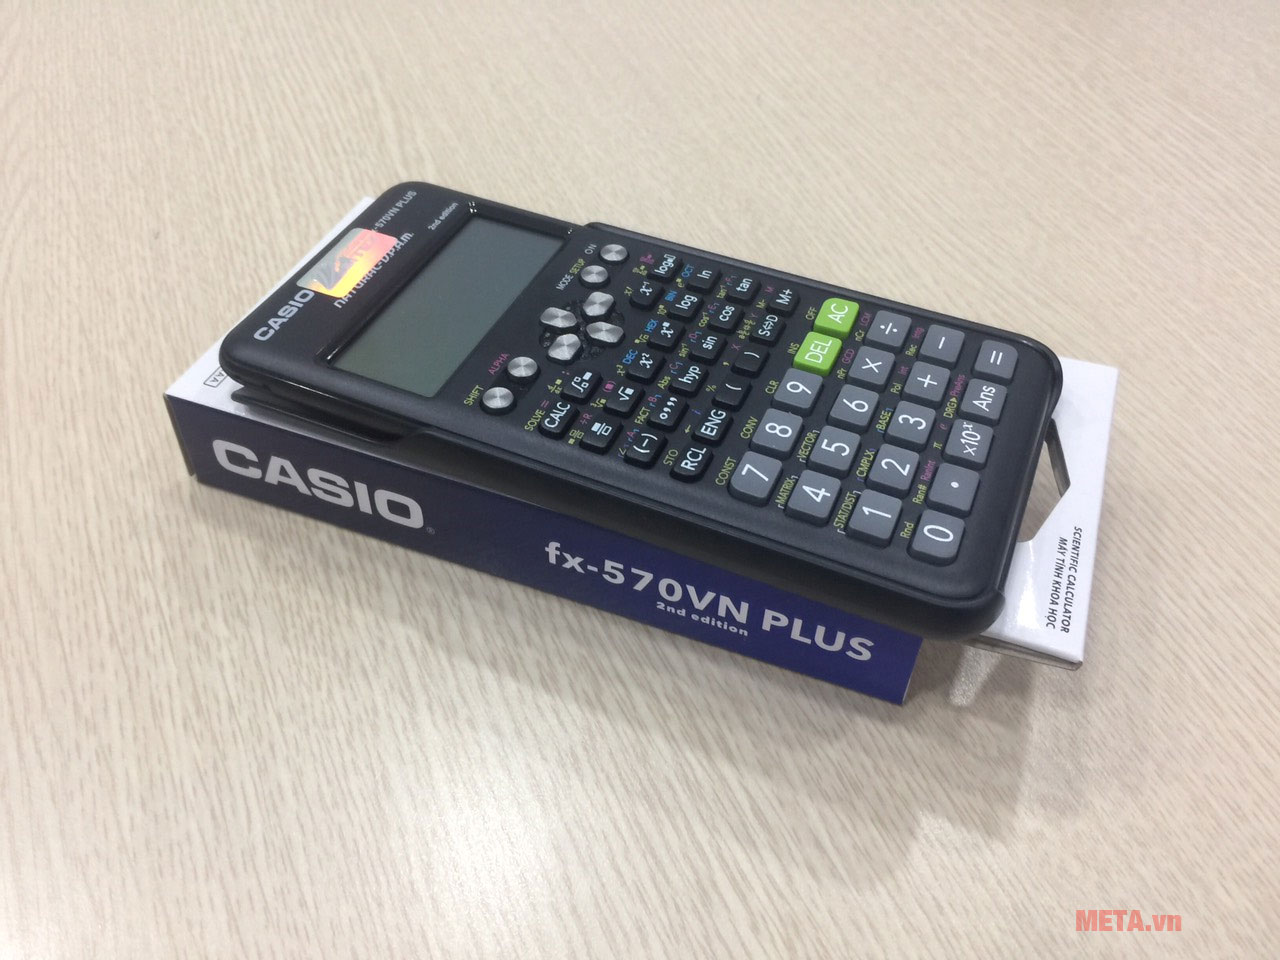 Máy tính bỏ túi Casio FX-570VN Plus phù hợp cho học sinh, sinh viên 